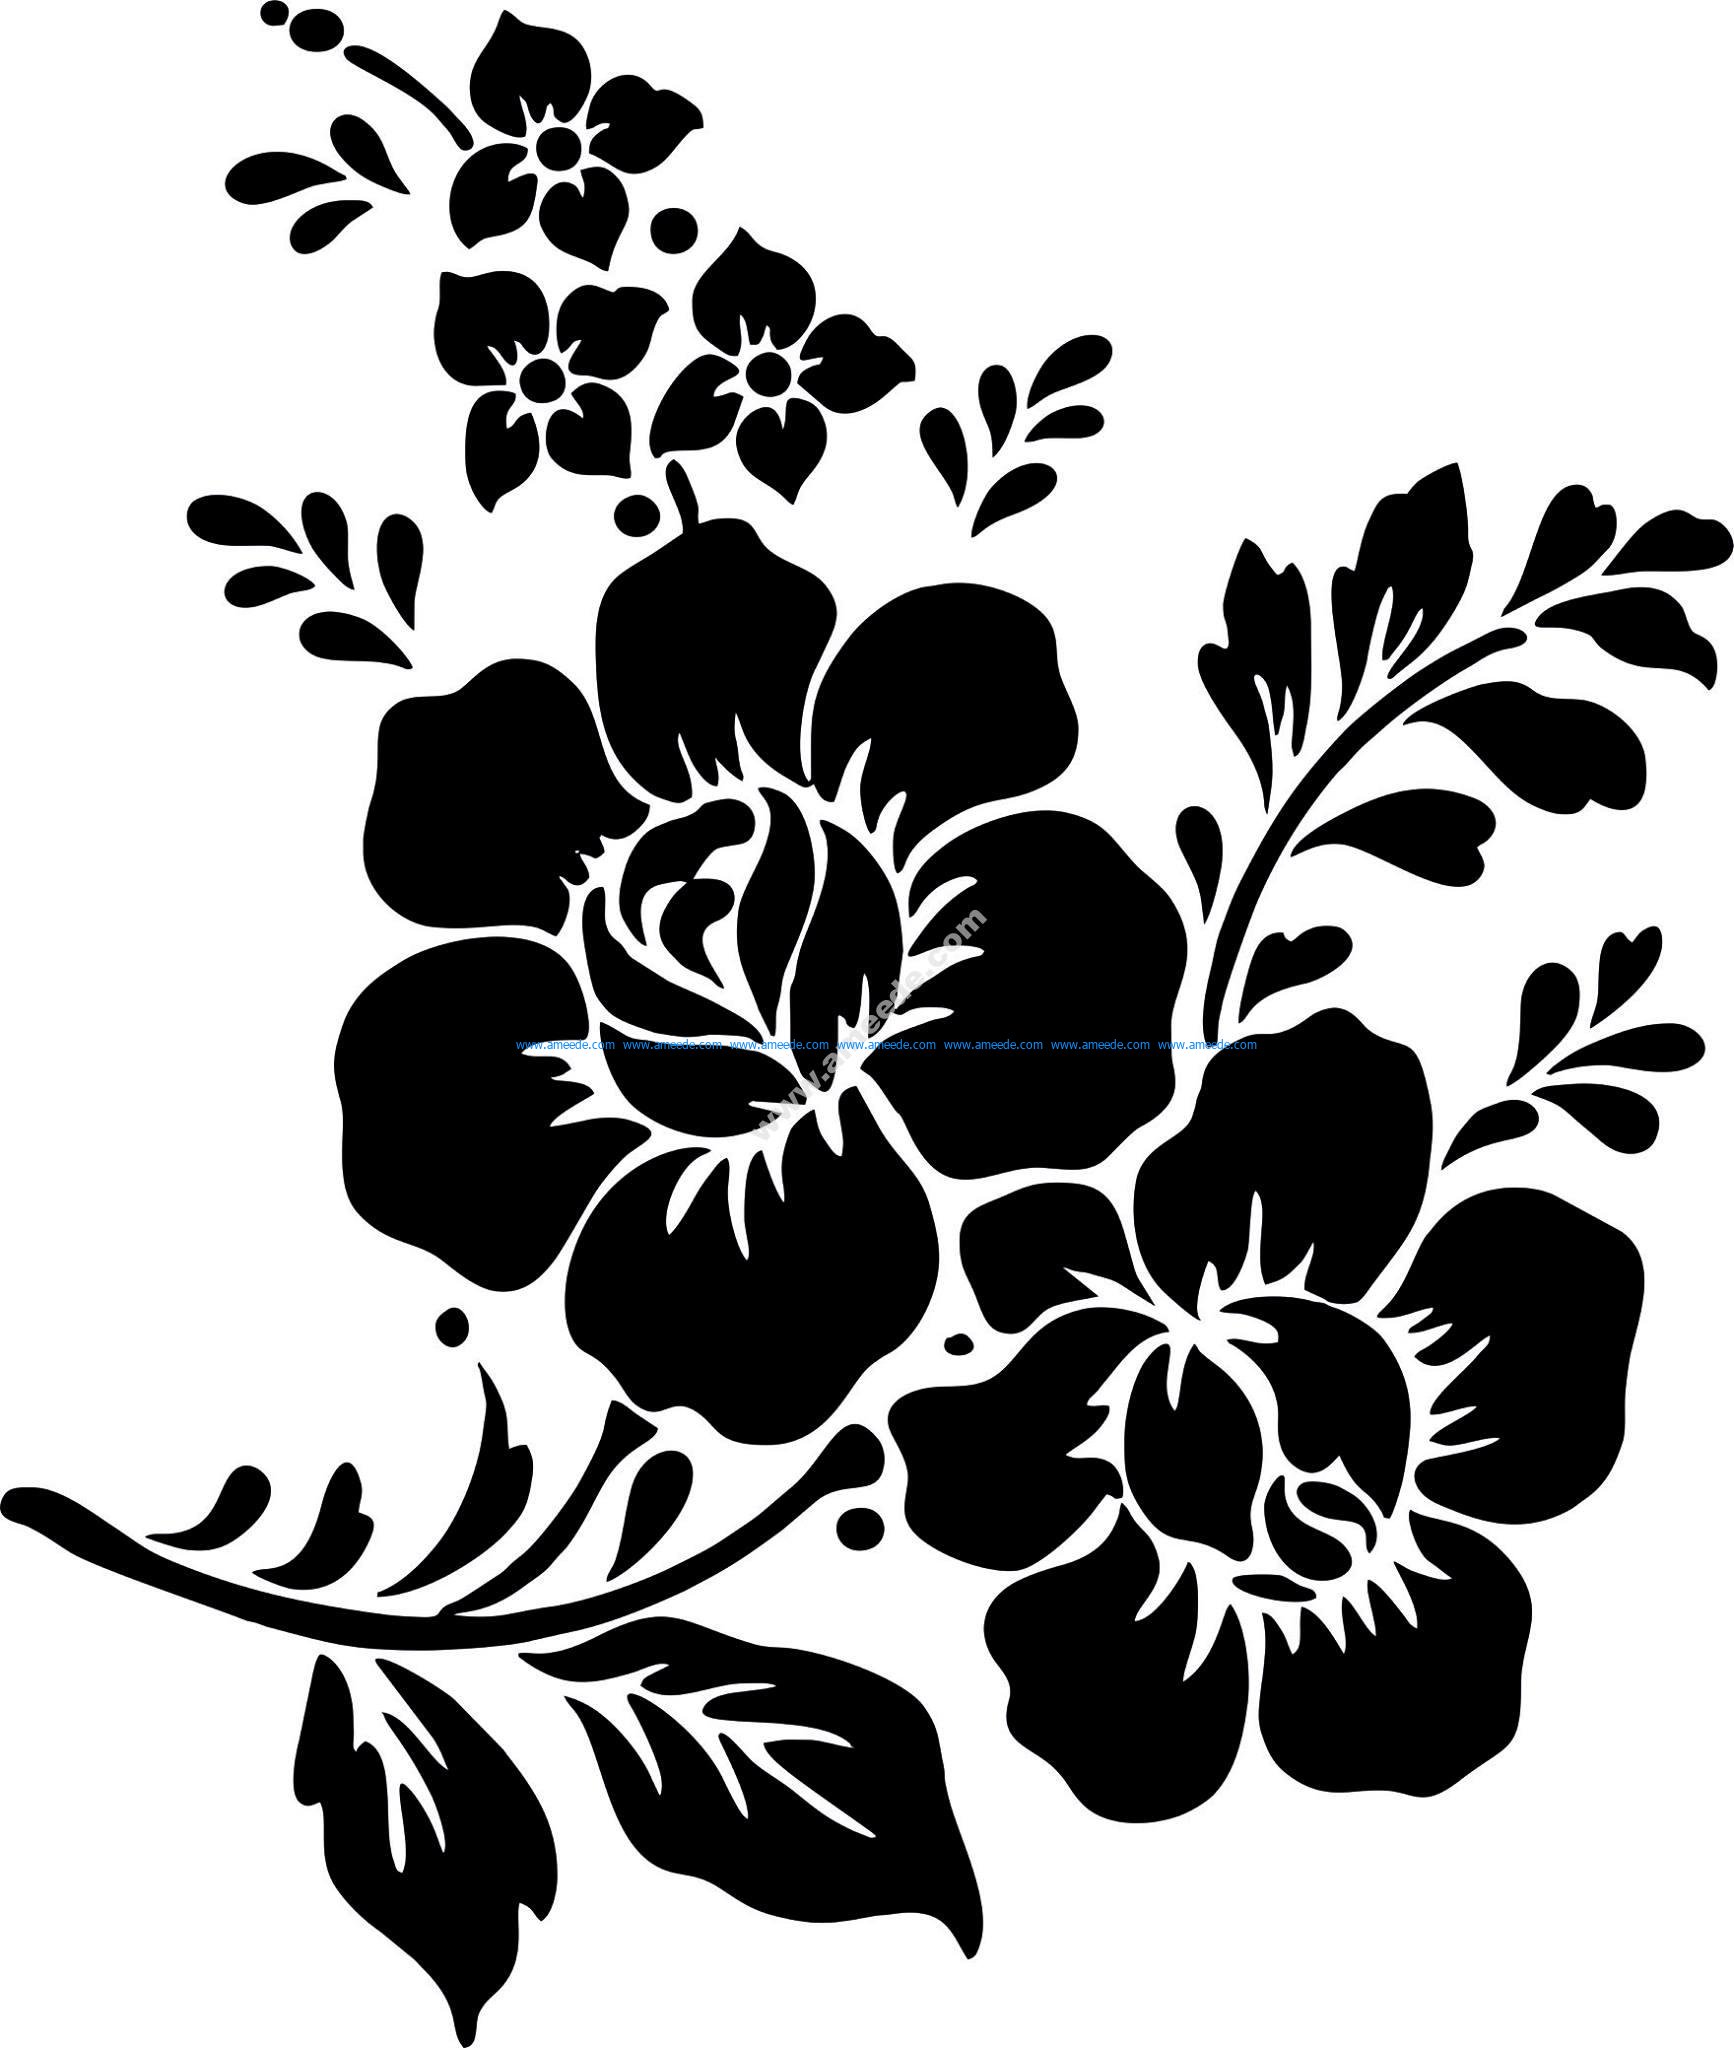 flower illustration vector file free download